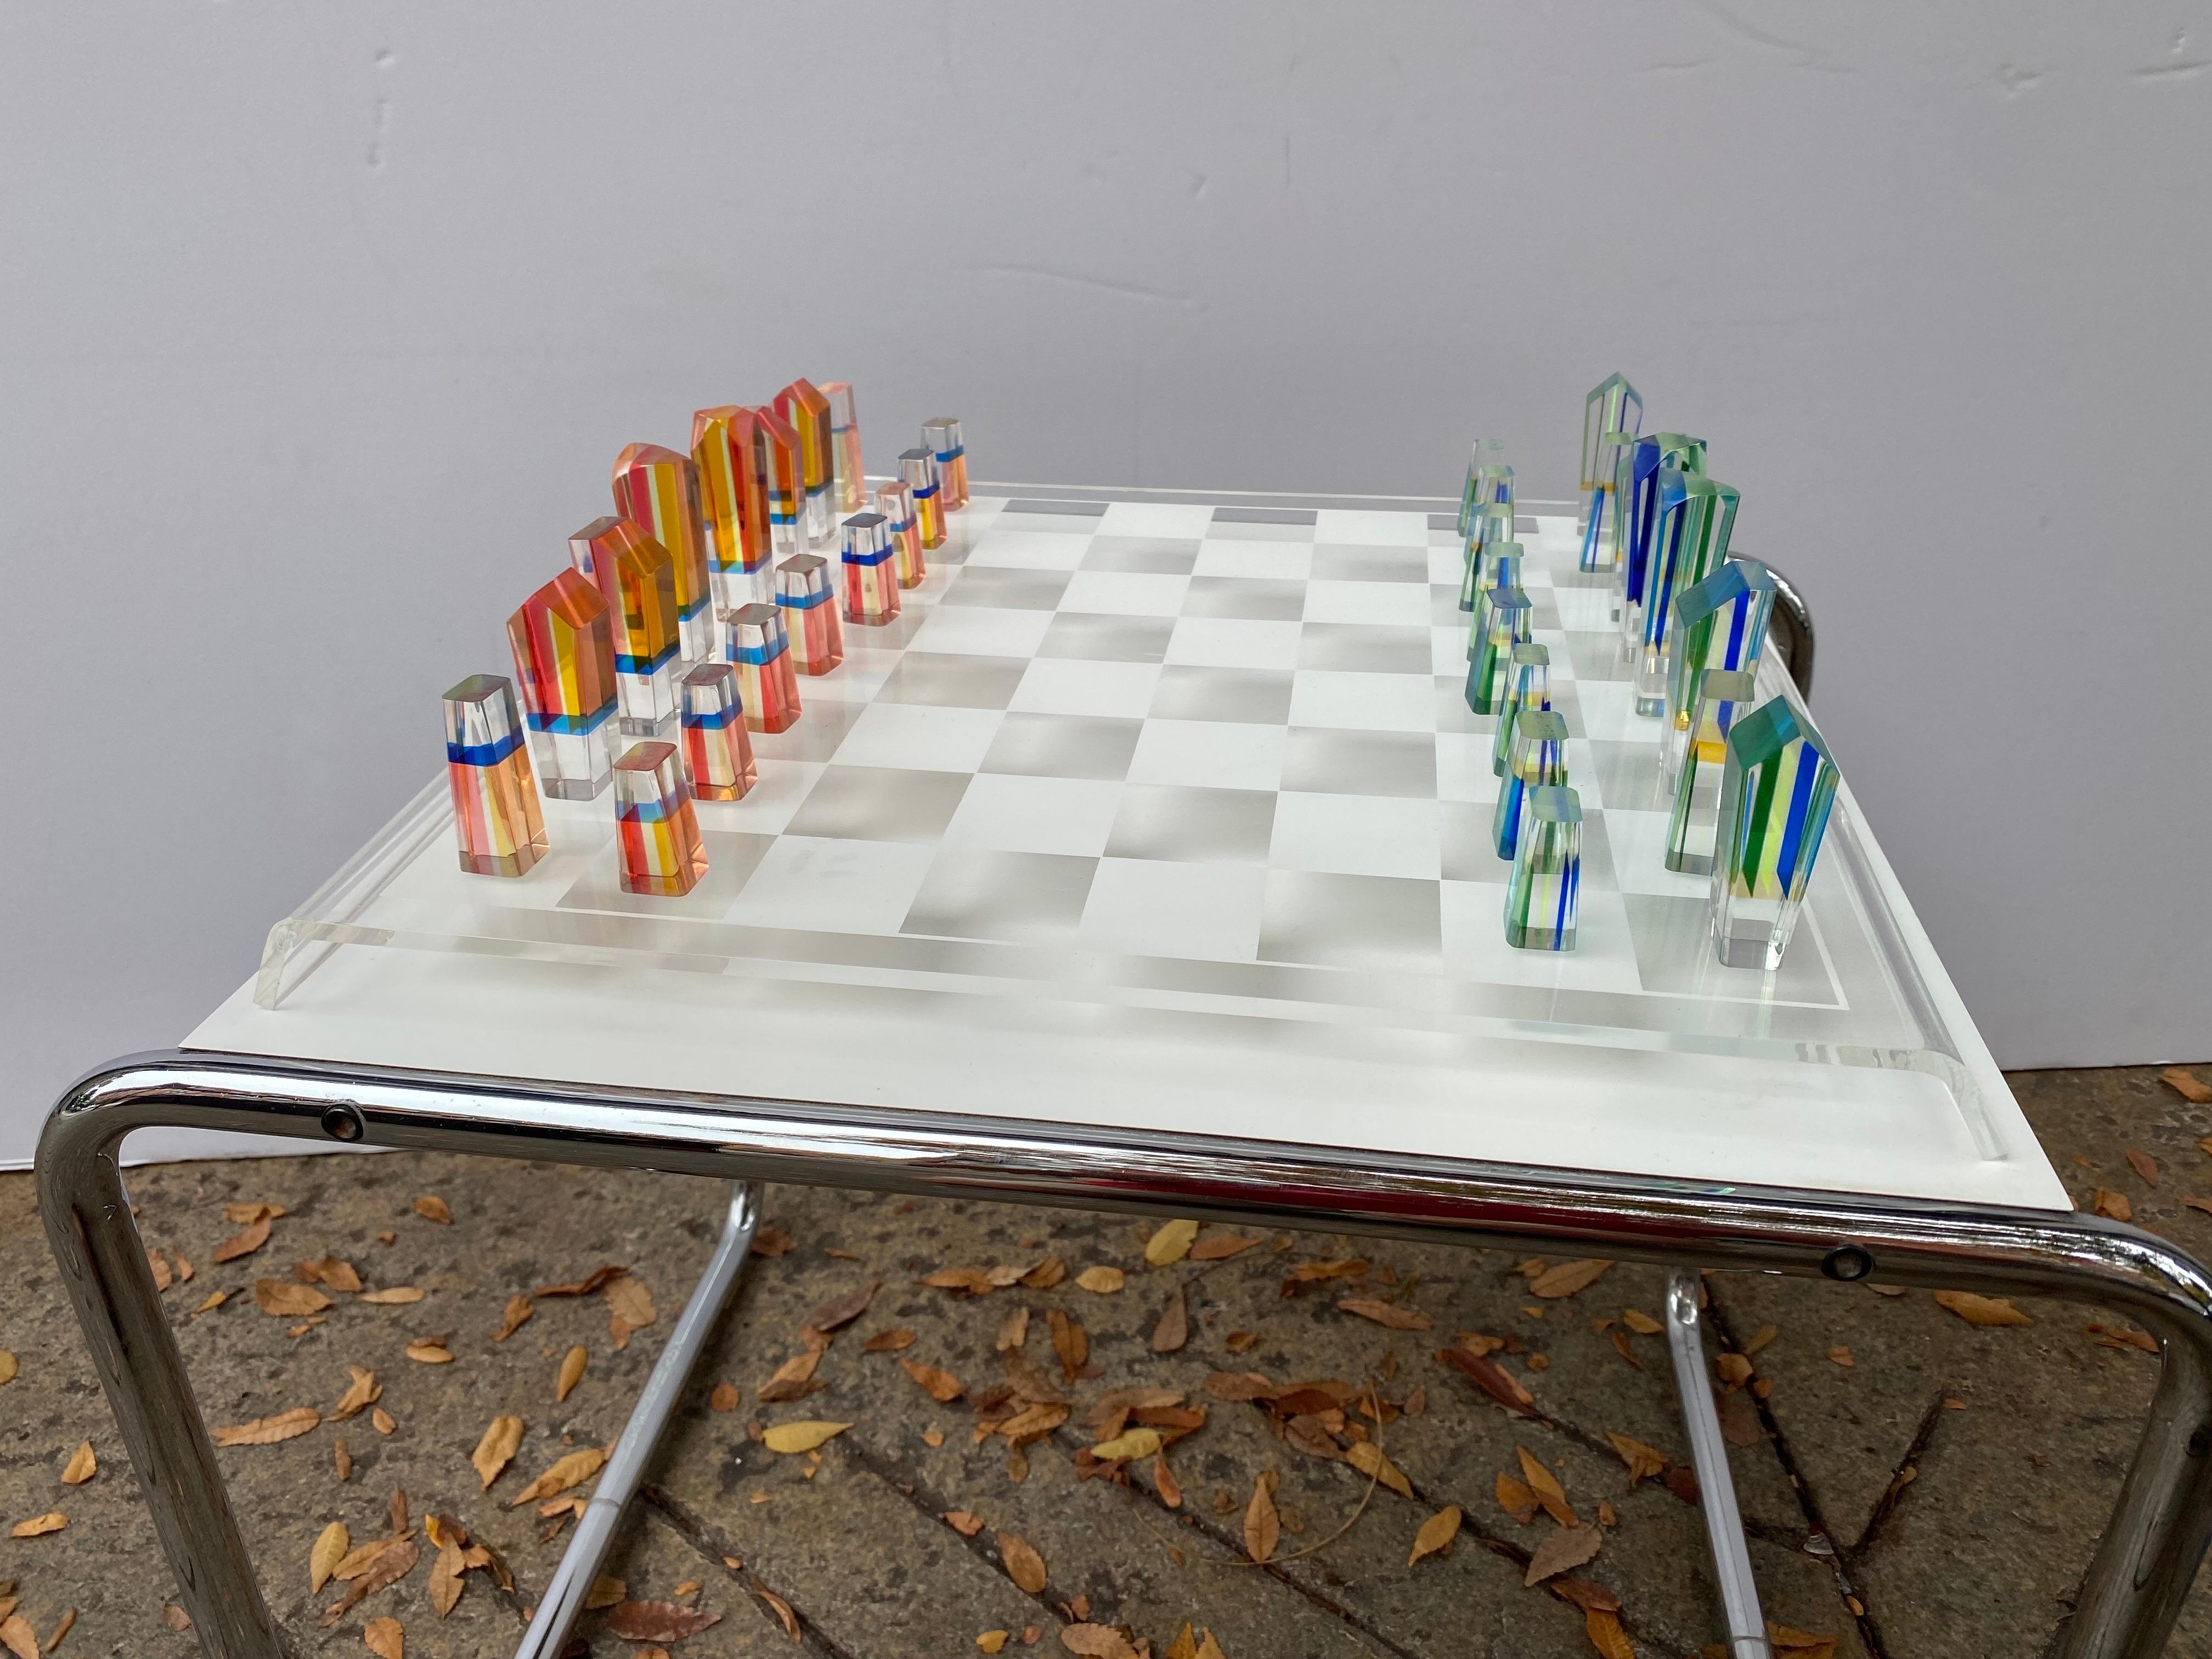 Charles Hollis Jones Jeu d'échecs et plateau en Lucite. Pièces de jeu en lucite de couleurs superposées. Un groupe est dans les tons d'oranges et de rouges et l'autre moitié est dans les tons bleus et verts. Les pièces sont en très bon état, sans